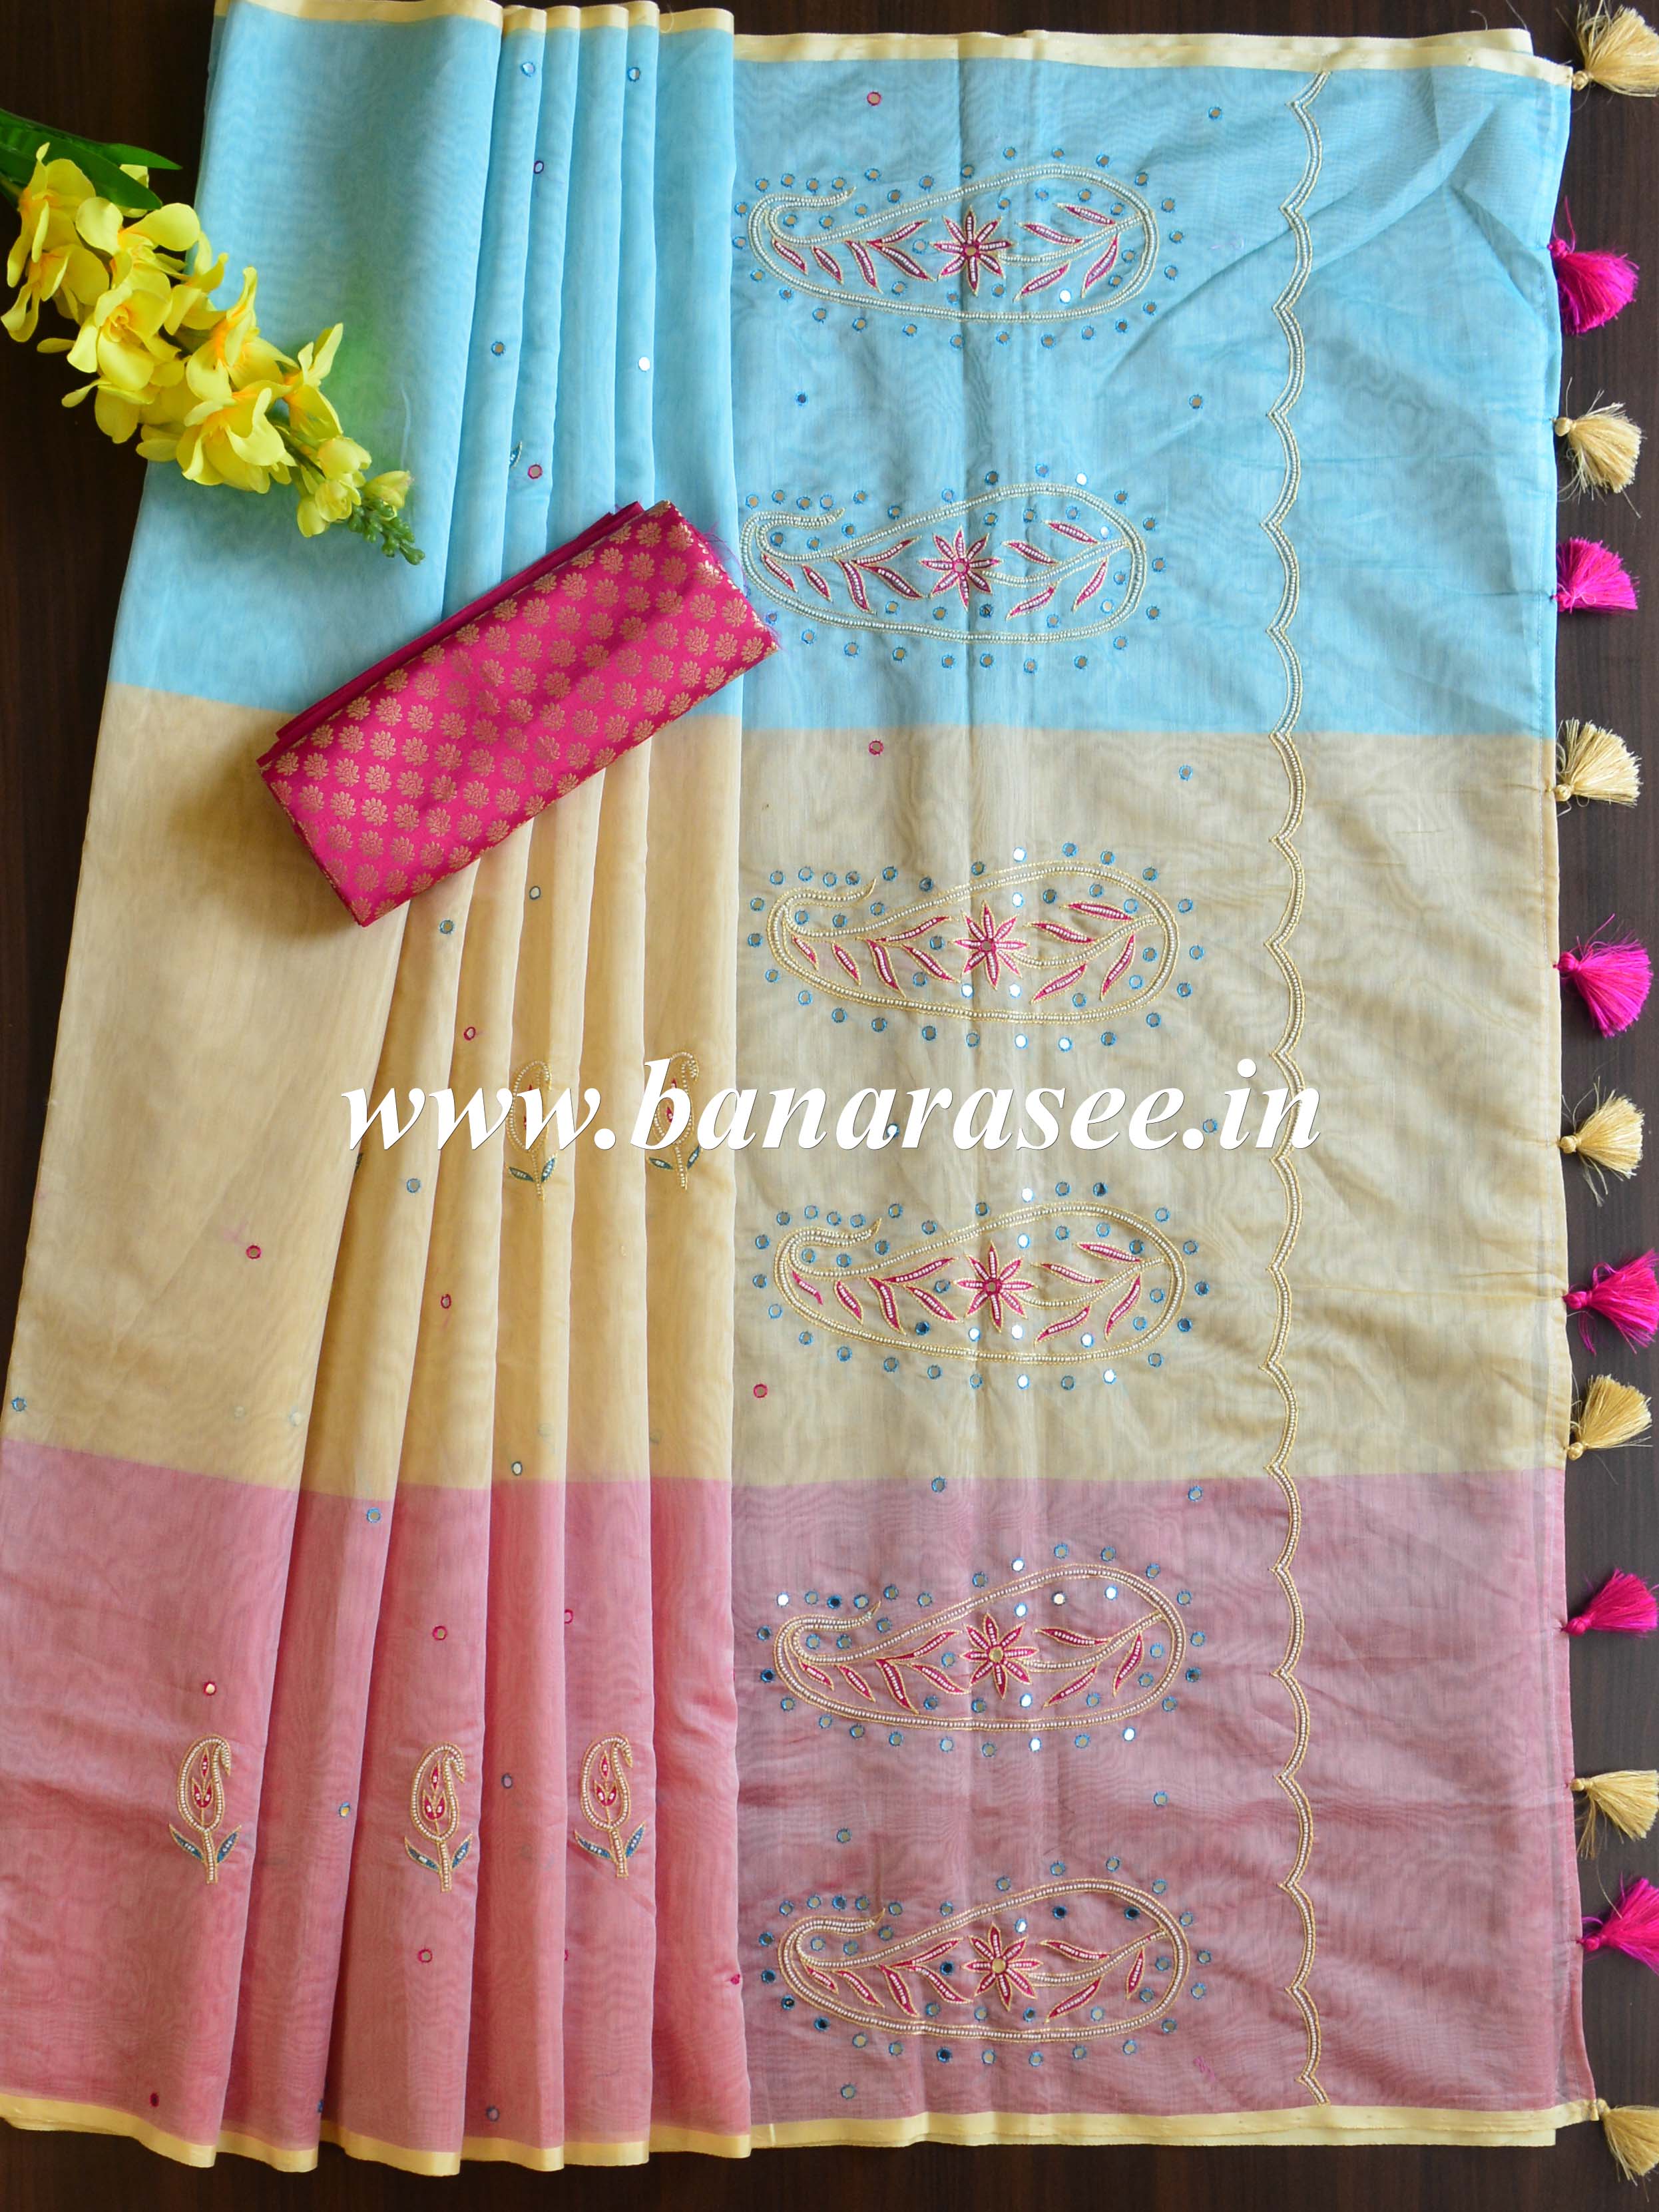 Banarasee Chanderi Cotton Multicolour Hand-Embroidered Saree-Multicolour